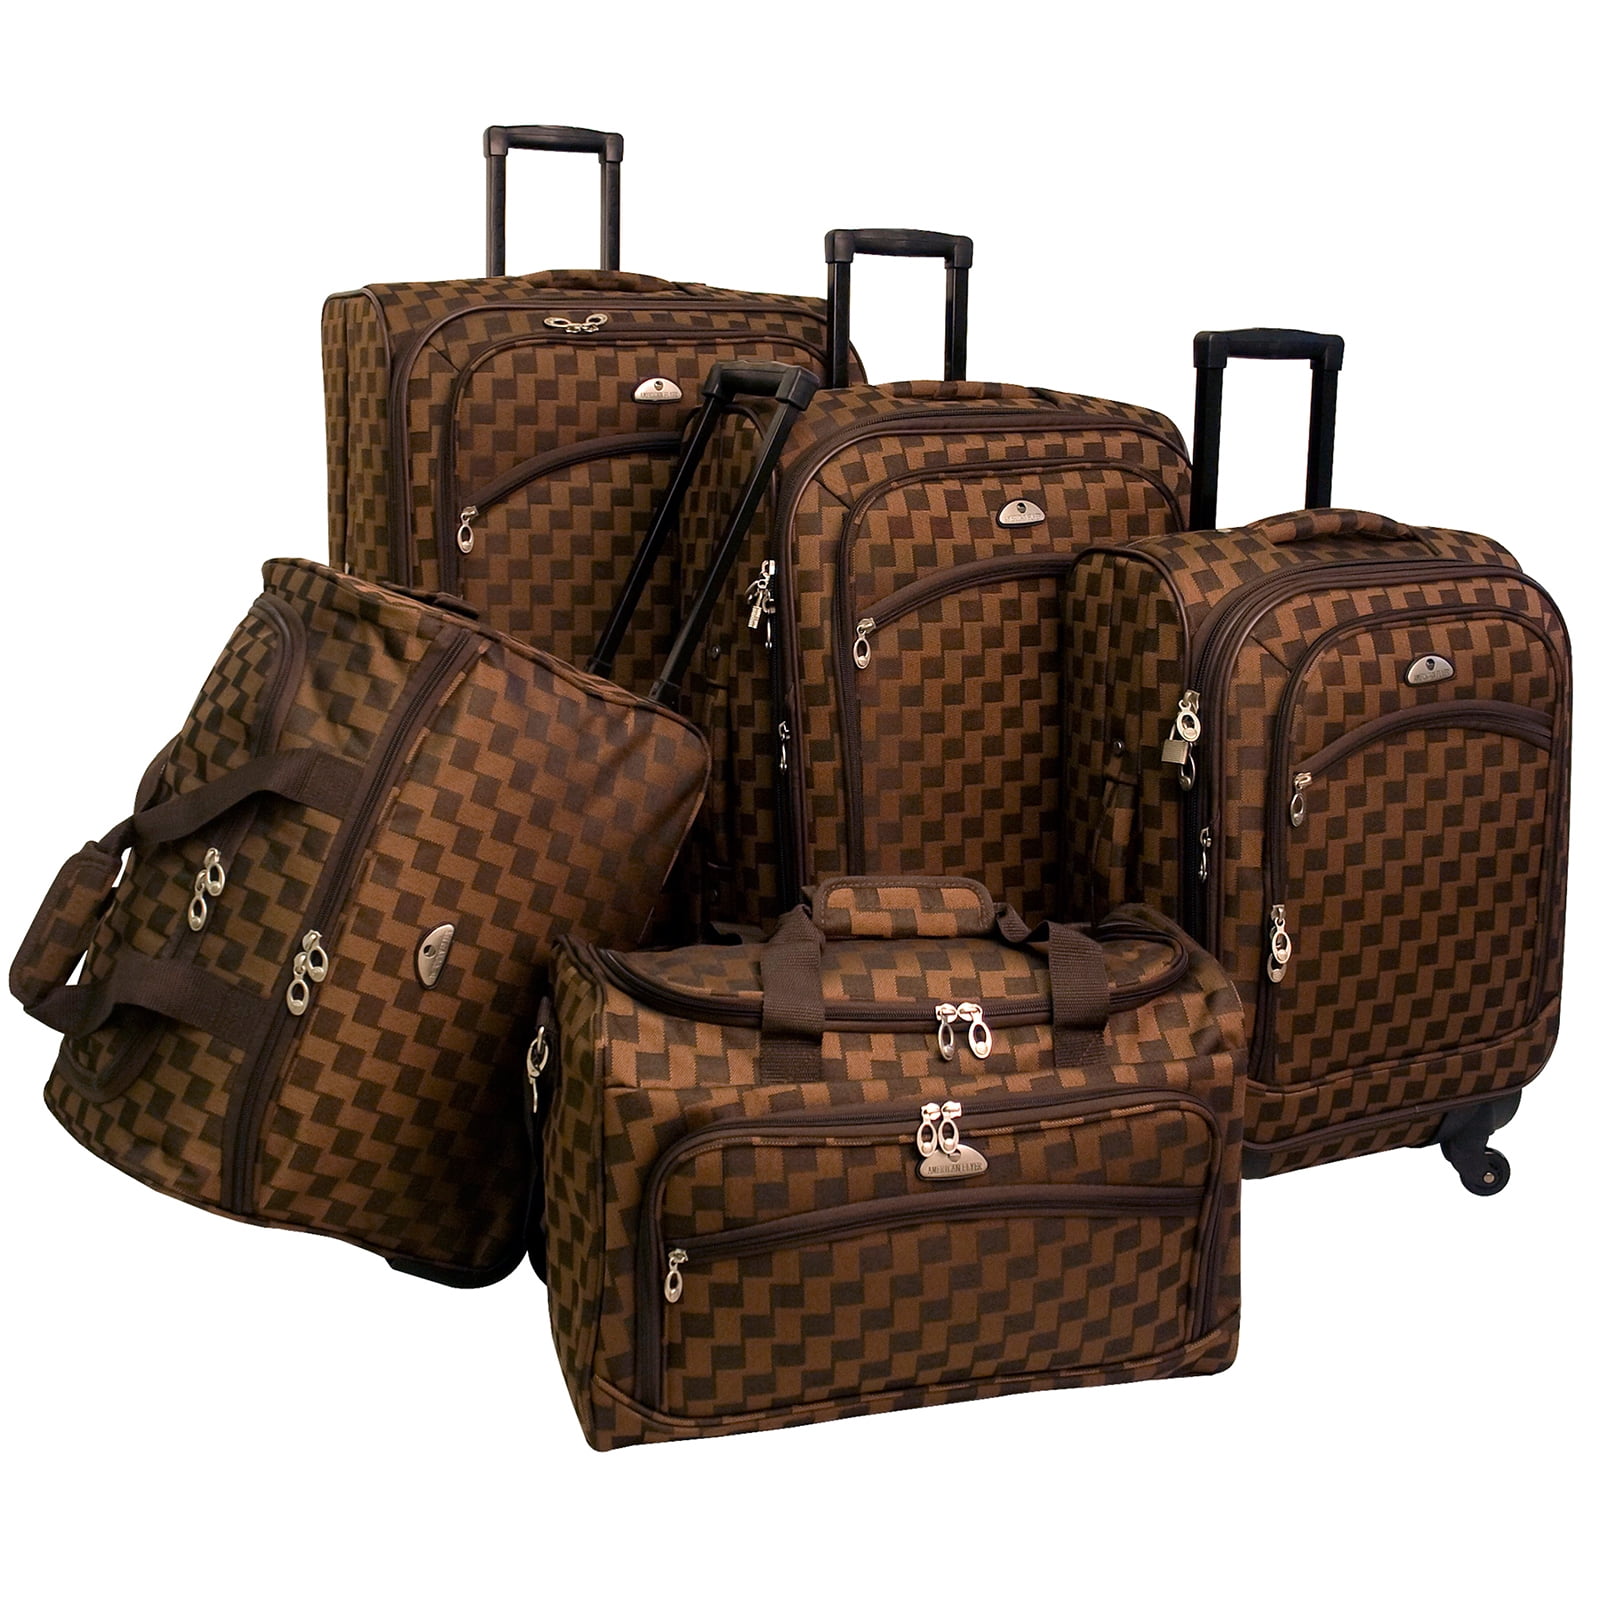 Louis Vuitton luggage set